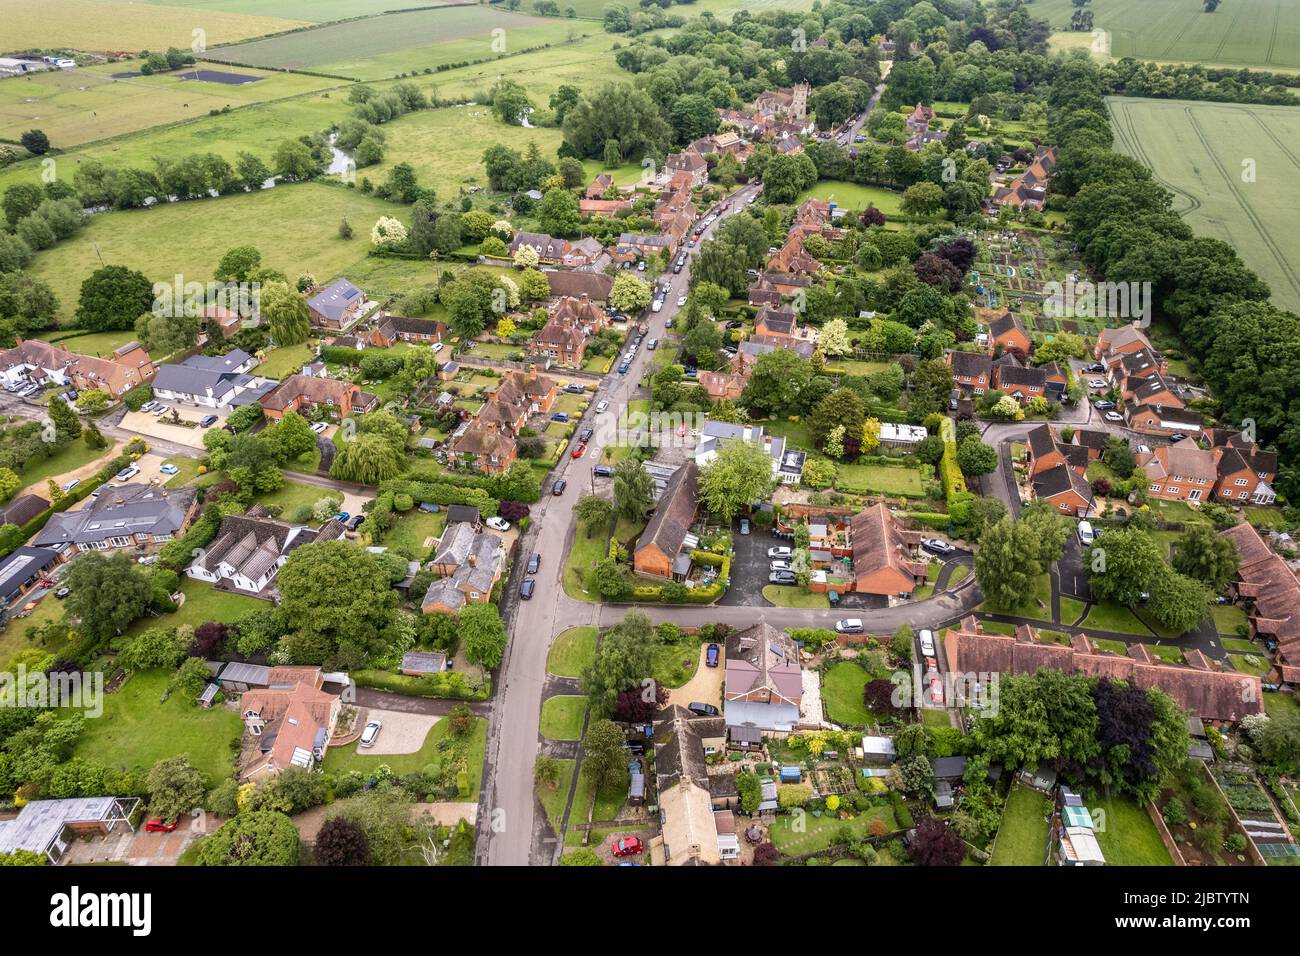 Das malerische Dorf Clifford Chambers, Warwickshire, Großbritannien, aus der Vogelperspektive. Stockfoto